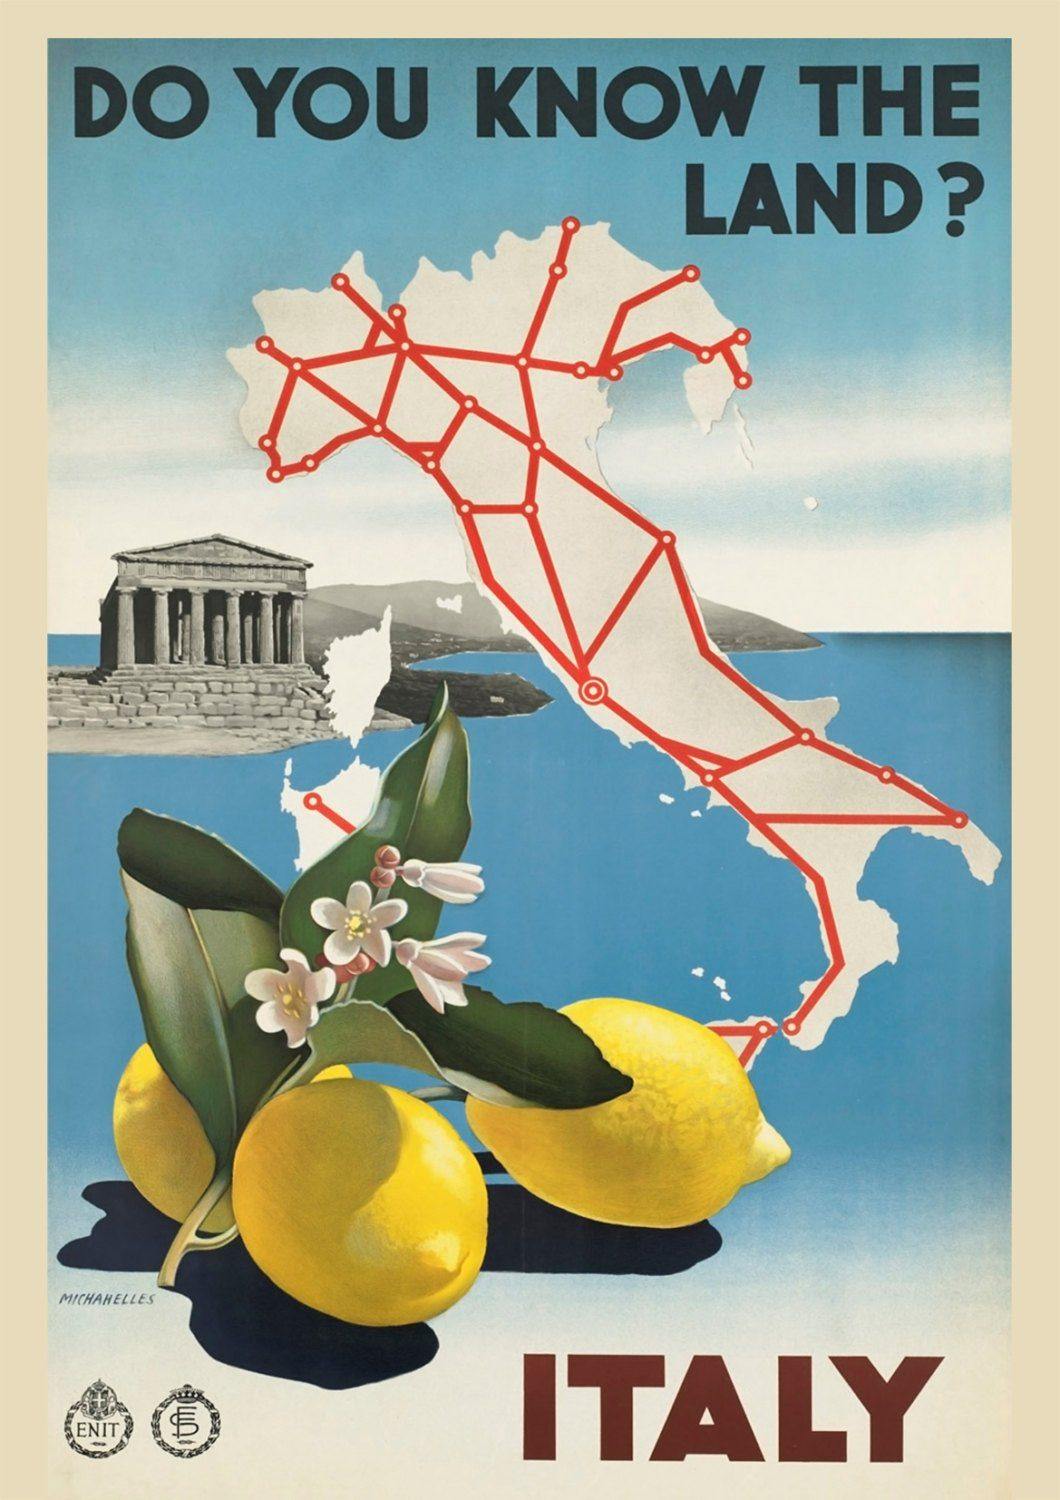 ITALY TRAVEL POSTER: Vintage Italian Tourism Advert - Pimlico Prints